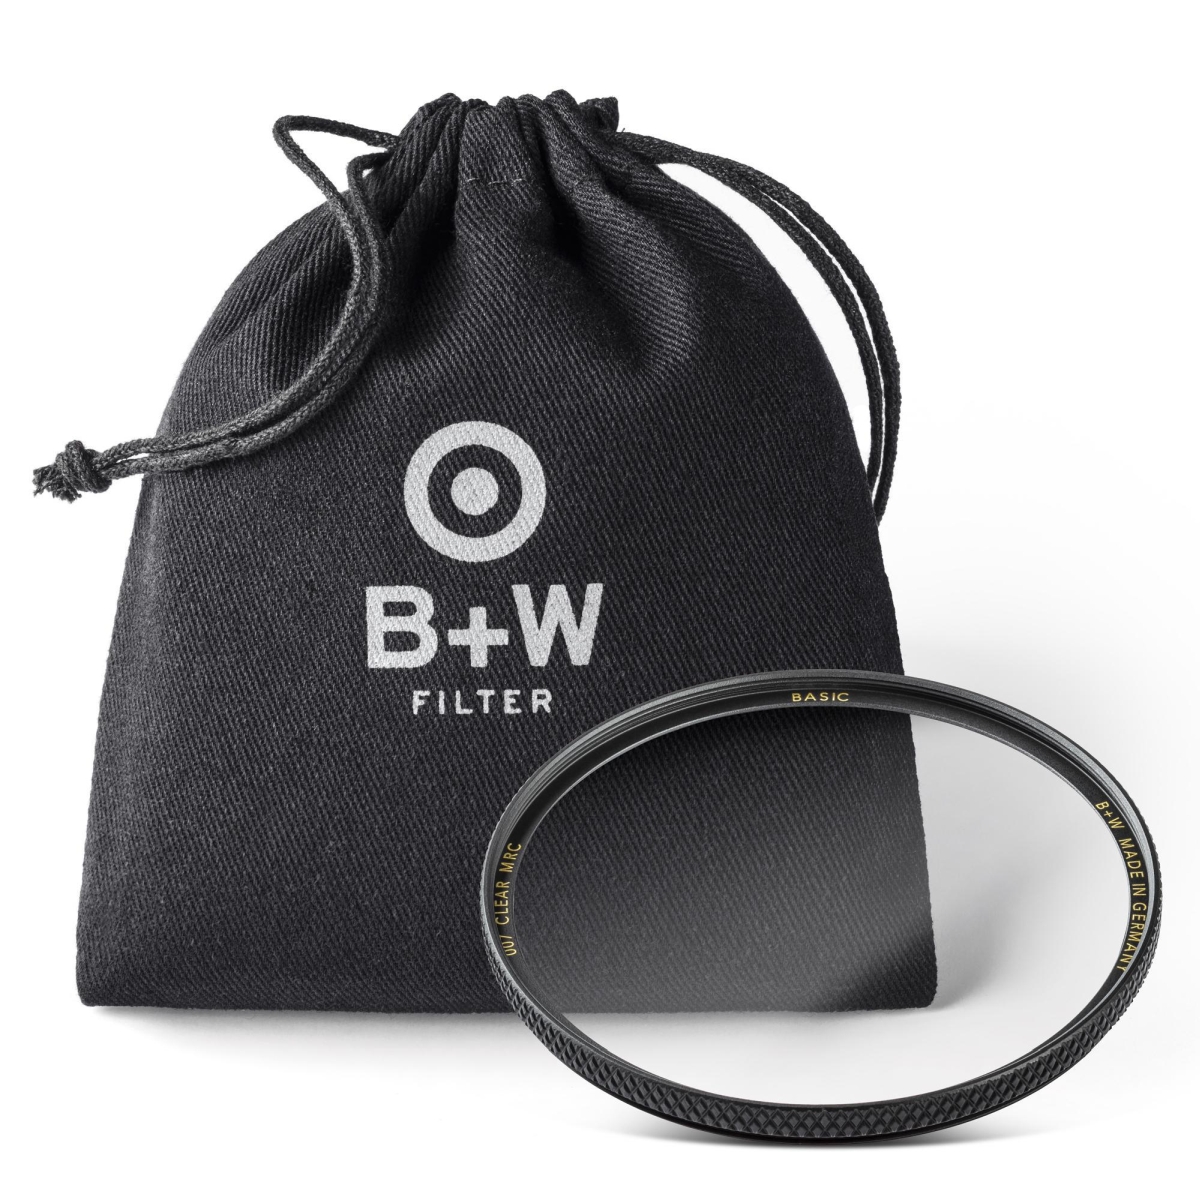 B+W Clear Filter 60 mm MRC Basic